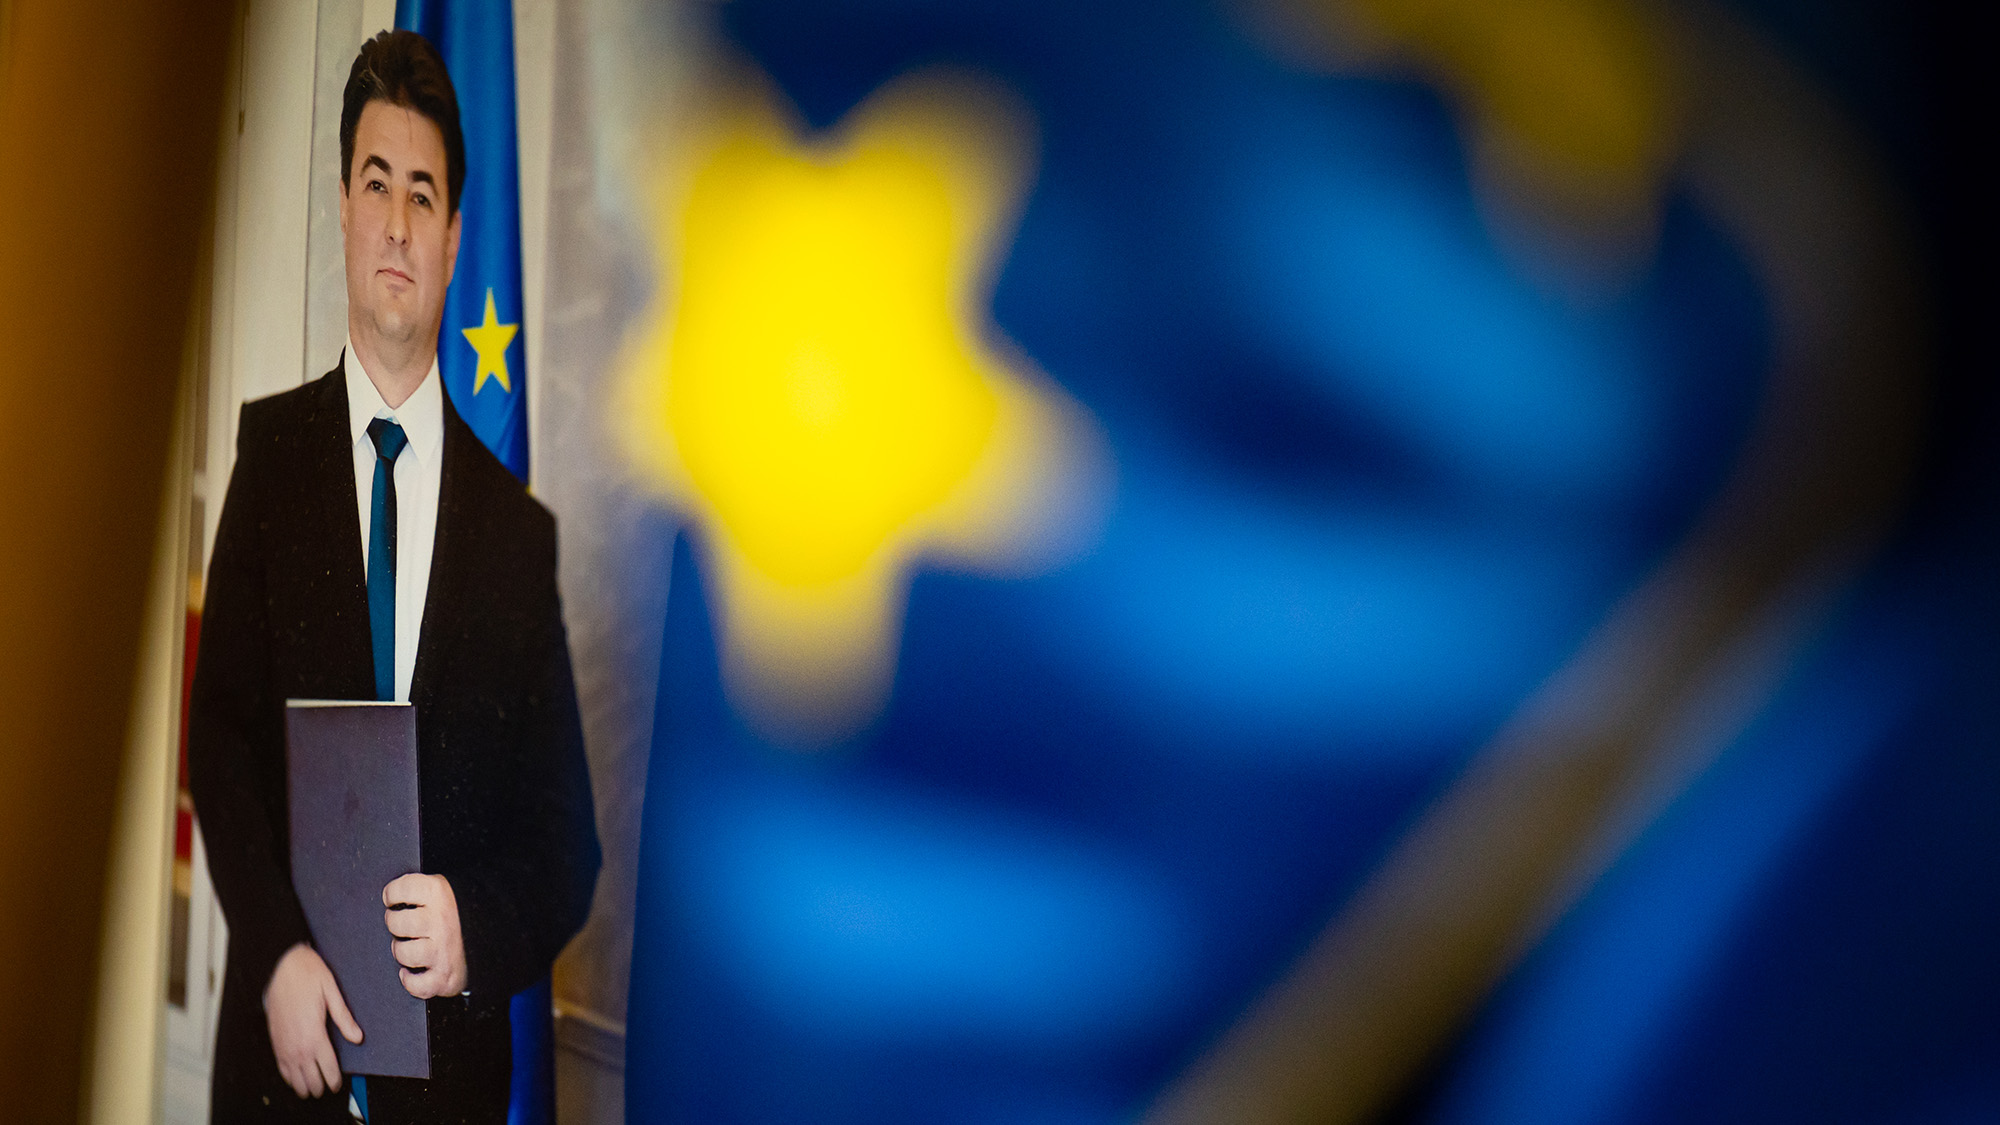 Fideszes politikusok a hivatalos döntés előtt kihirdették, kik nyerik az EU-s pénzeket